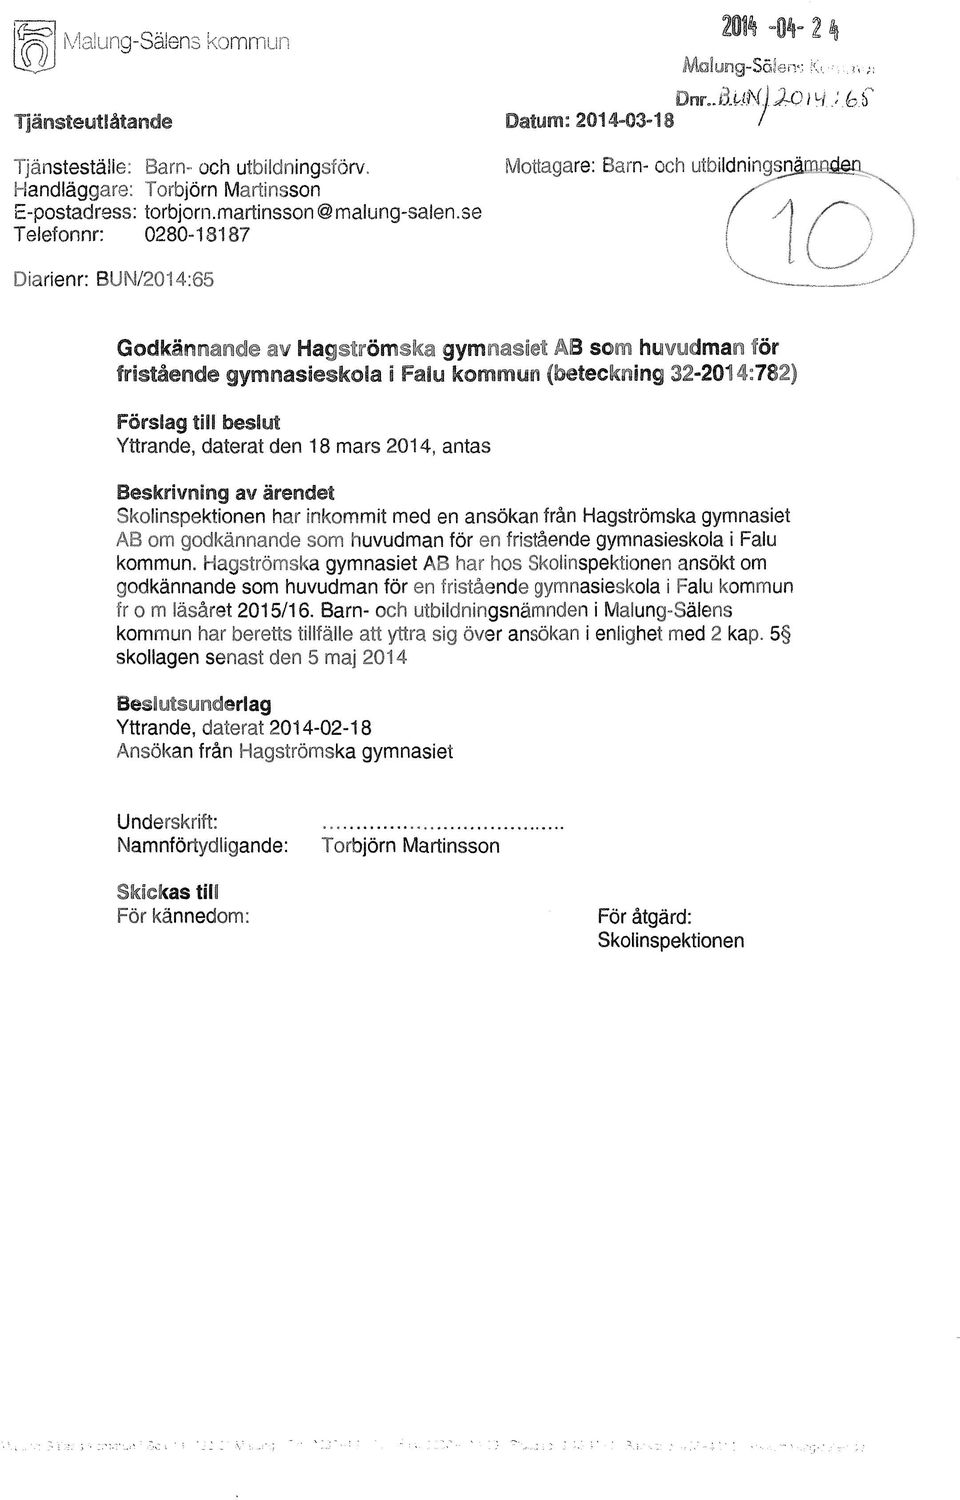 32-2014:782) Förslag till beslut Yttrande, daterat den 18 mars 2014, antas Skolinspektionen har inkommit med en ansökan från Hagströmska gymnasiet AB om godkännande som huvudman för en fristående